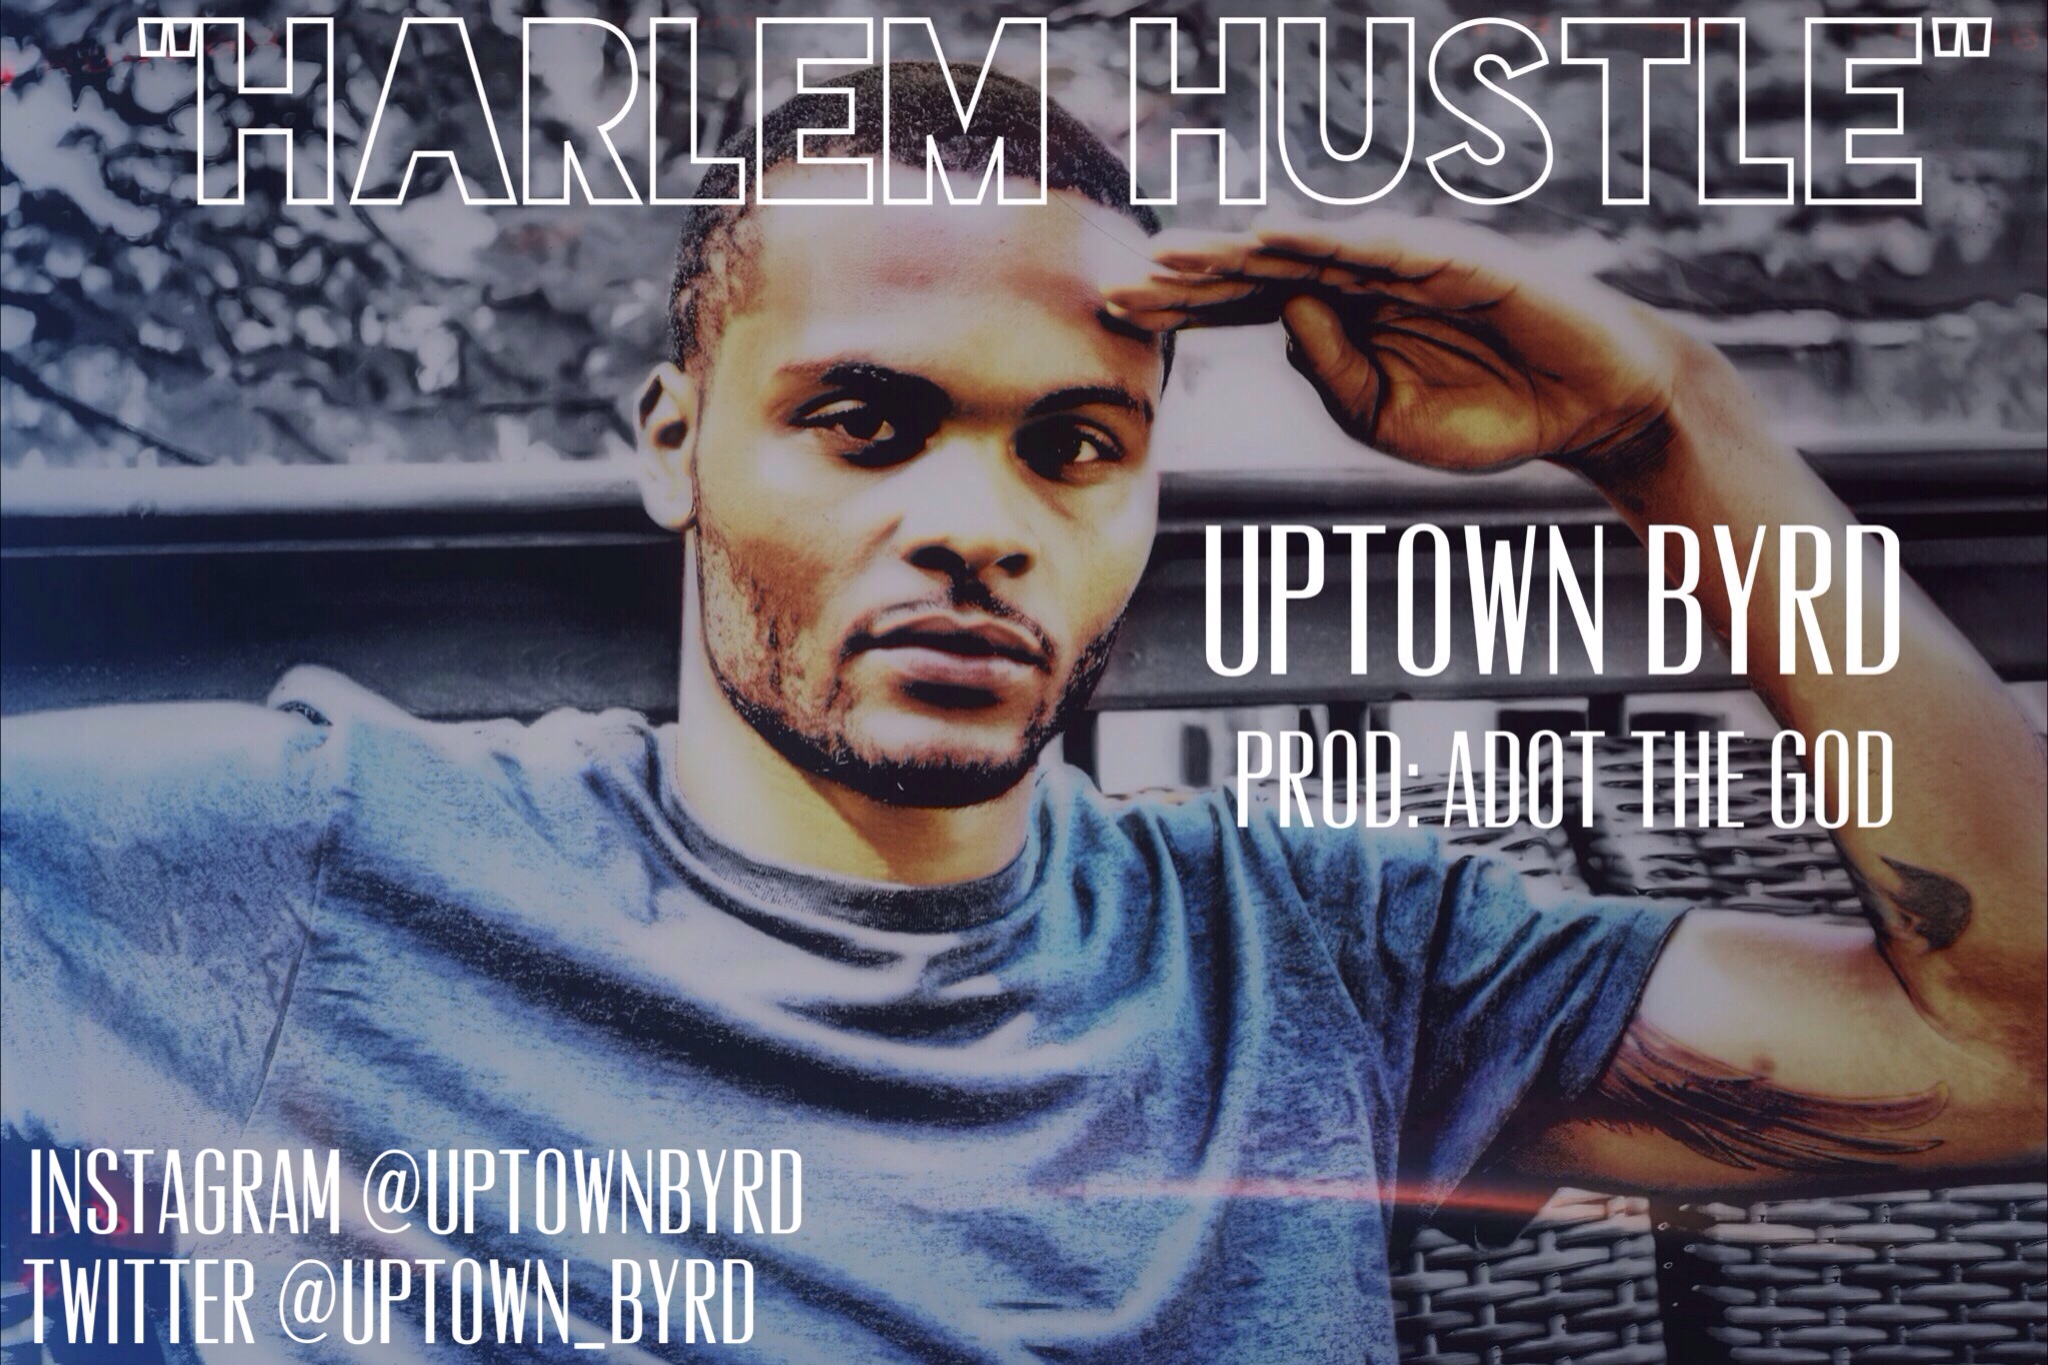 uptown-byrd-harlem-hustle-prod-adot-god-HHS1987-2013 Uptown Byrd (@Uptown_Byrd) - Harlem Hustle (Prod by ADot The God)  